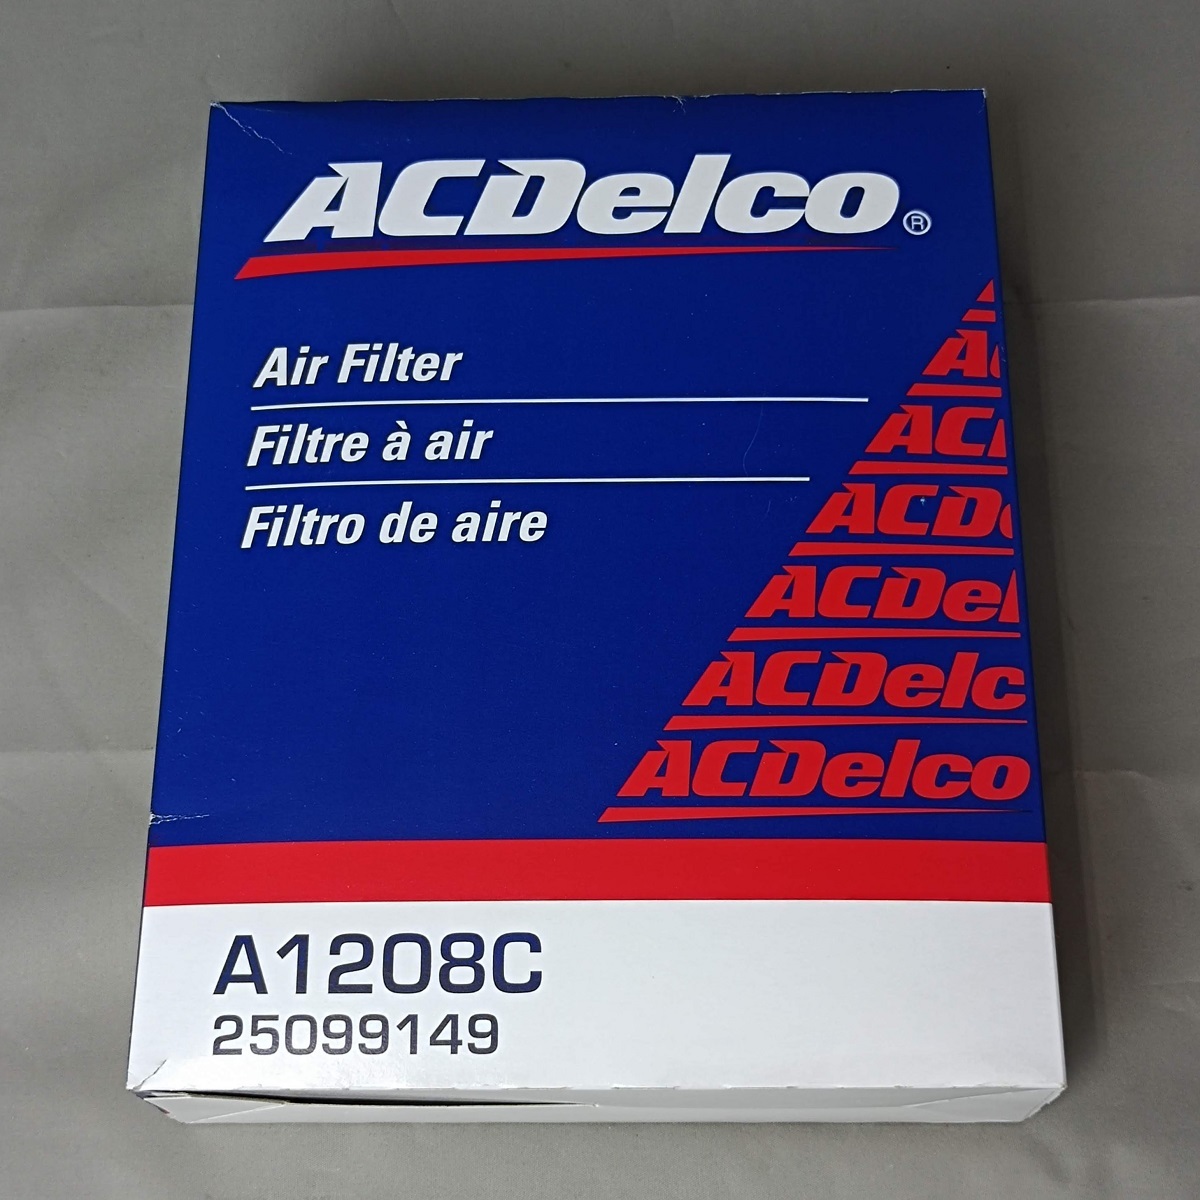  Cadillac Seville < air filter > ACDelcoe-si- Delco A1208C